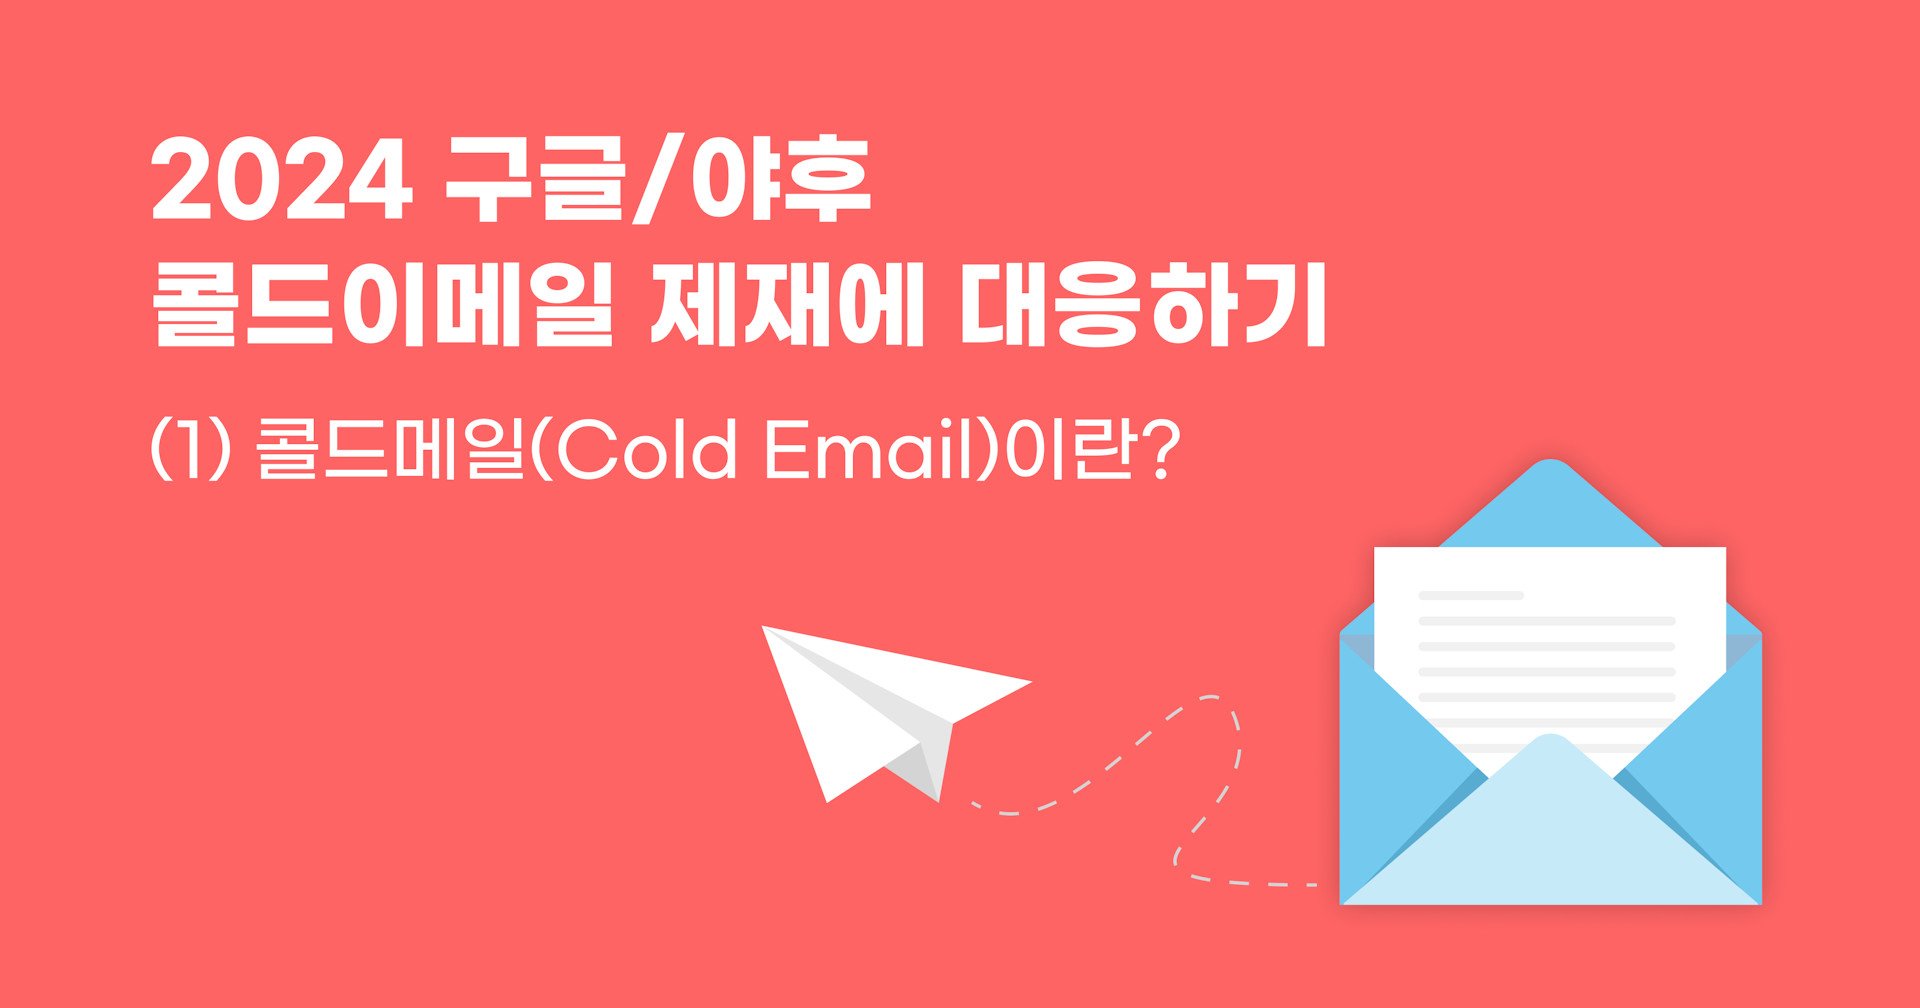 2024 콜드메일 제재(1): 콜드메일(Cold Email)이란 무엇인가요?